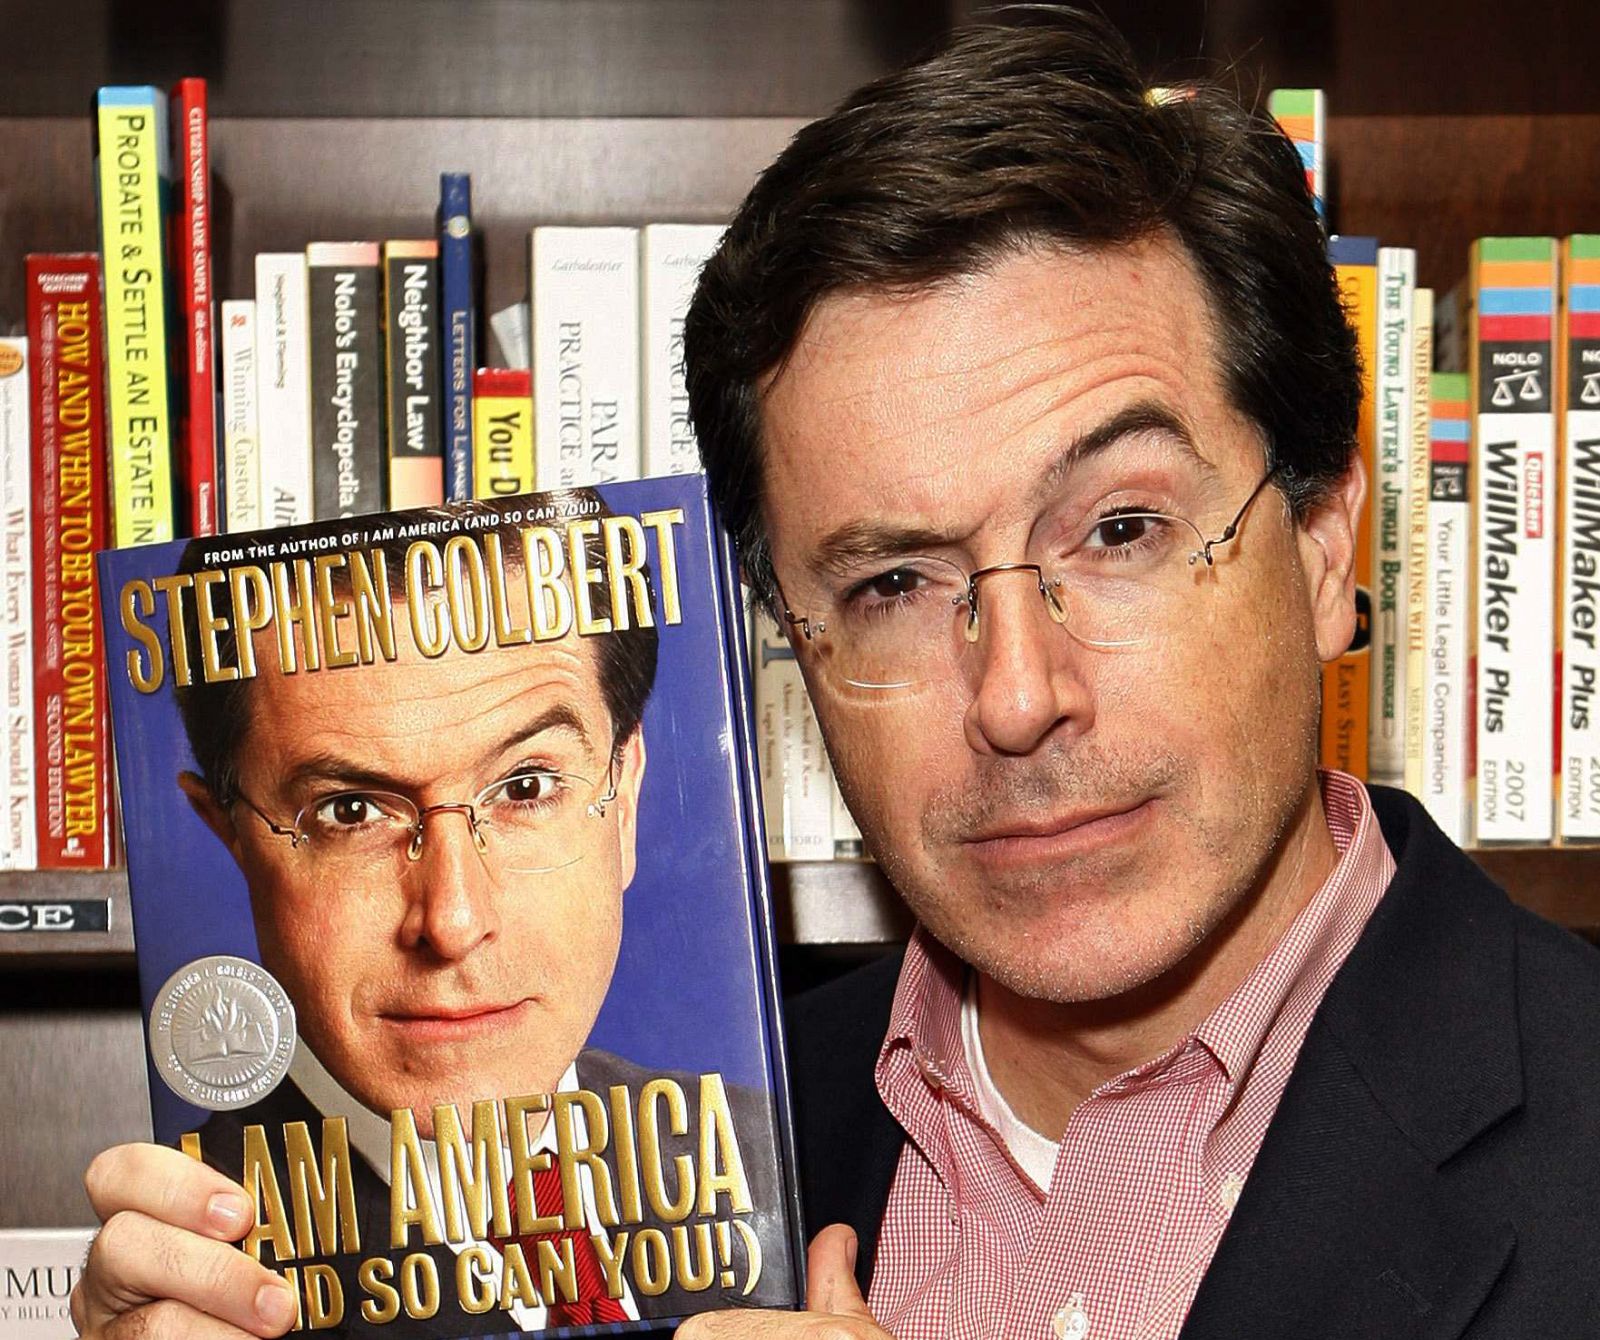 El cómico Stephen Colbert, posando con uno de sus libros.